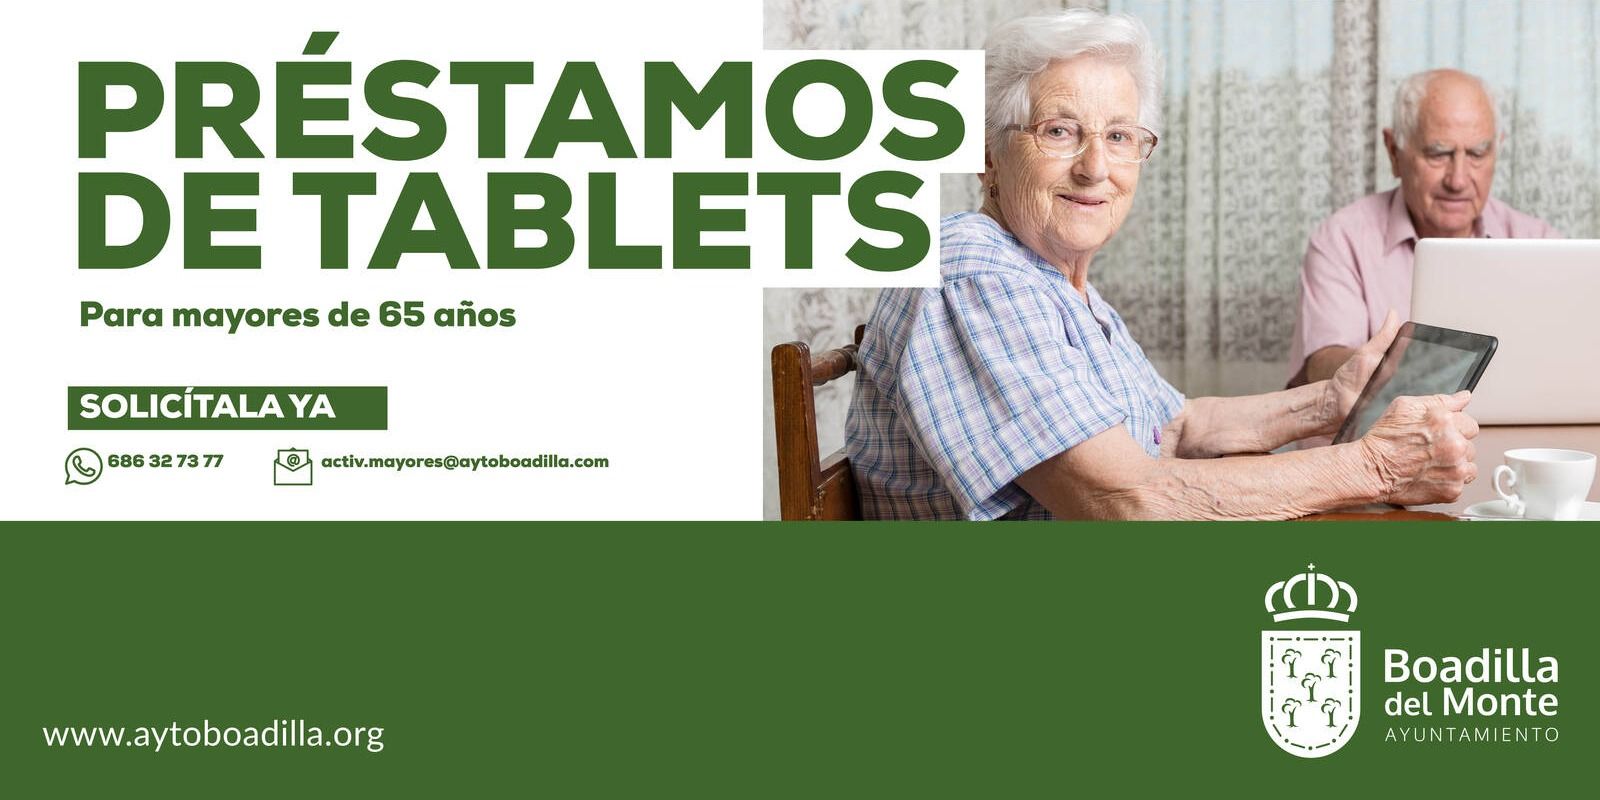 Nuevo servicio de préstamo de tablets para mayores de 65 años en Boadilla